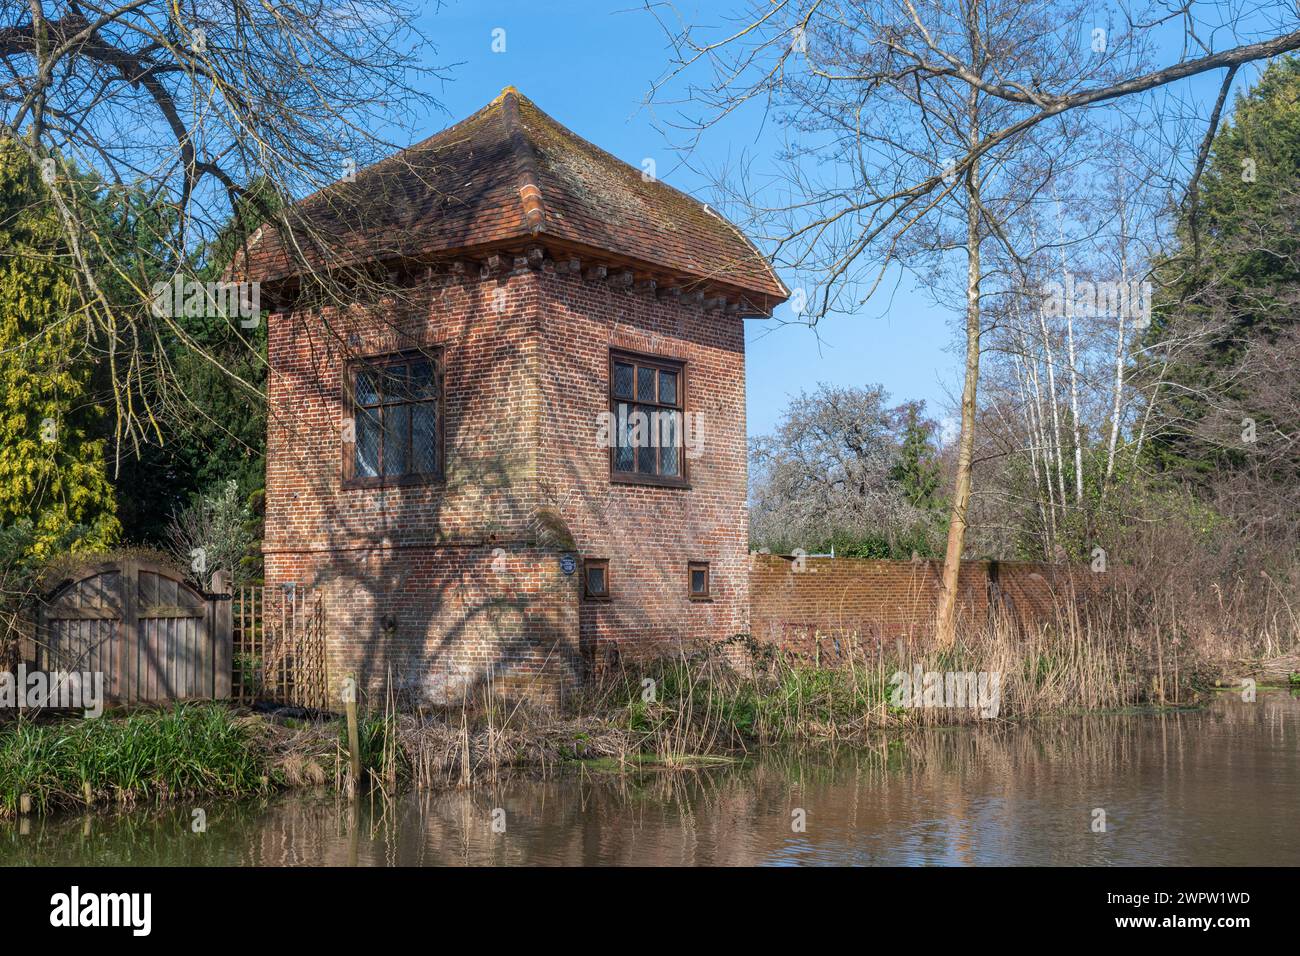 John donne Summer House, une tour de briques près de la rivière Wey près de Ripley, Surrey, Angleterre, Royaume-Uni, où le poète et doyen de St.Pauls a vécu 1600-1604 Banque D'Images